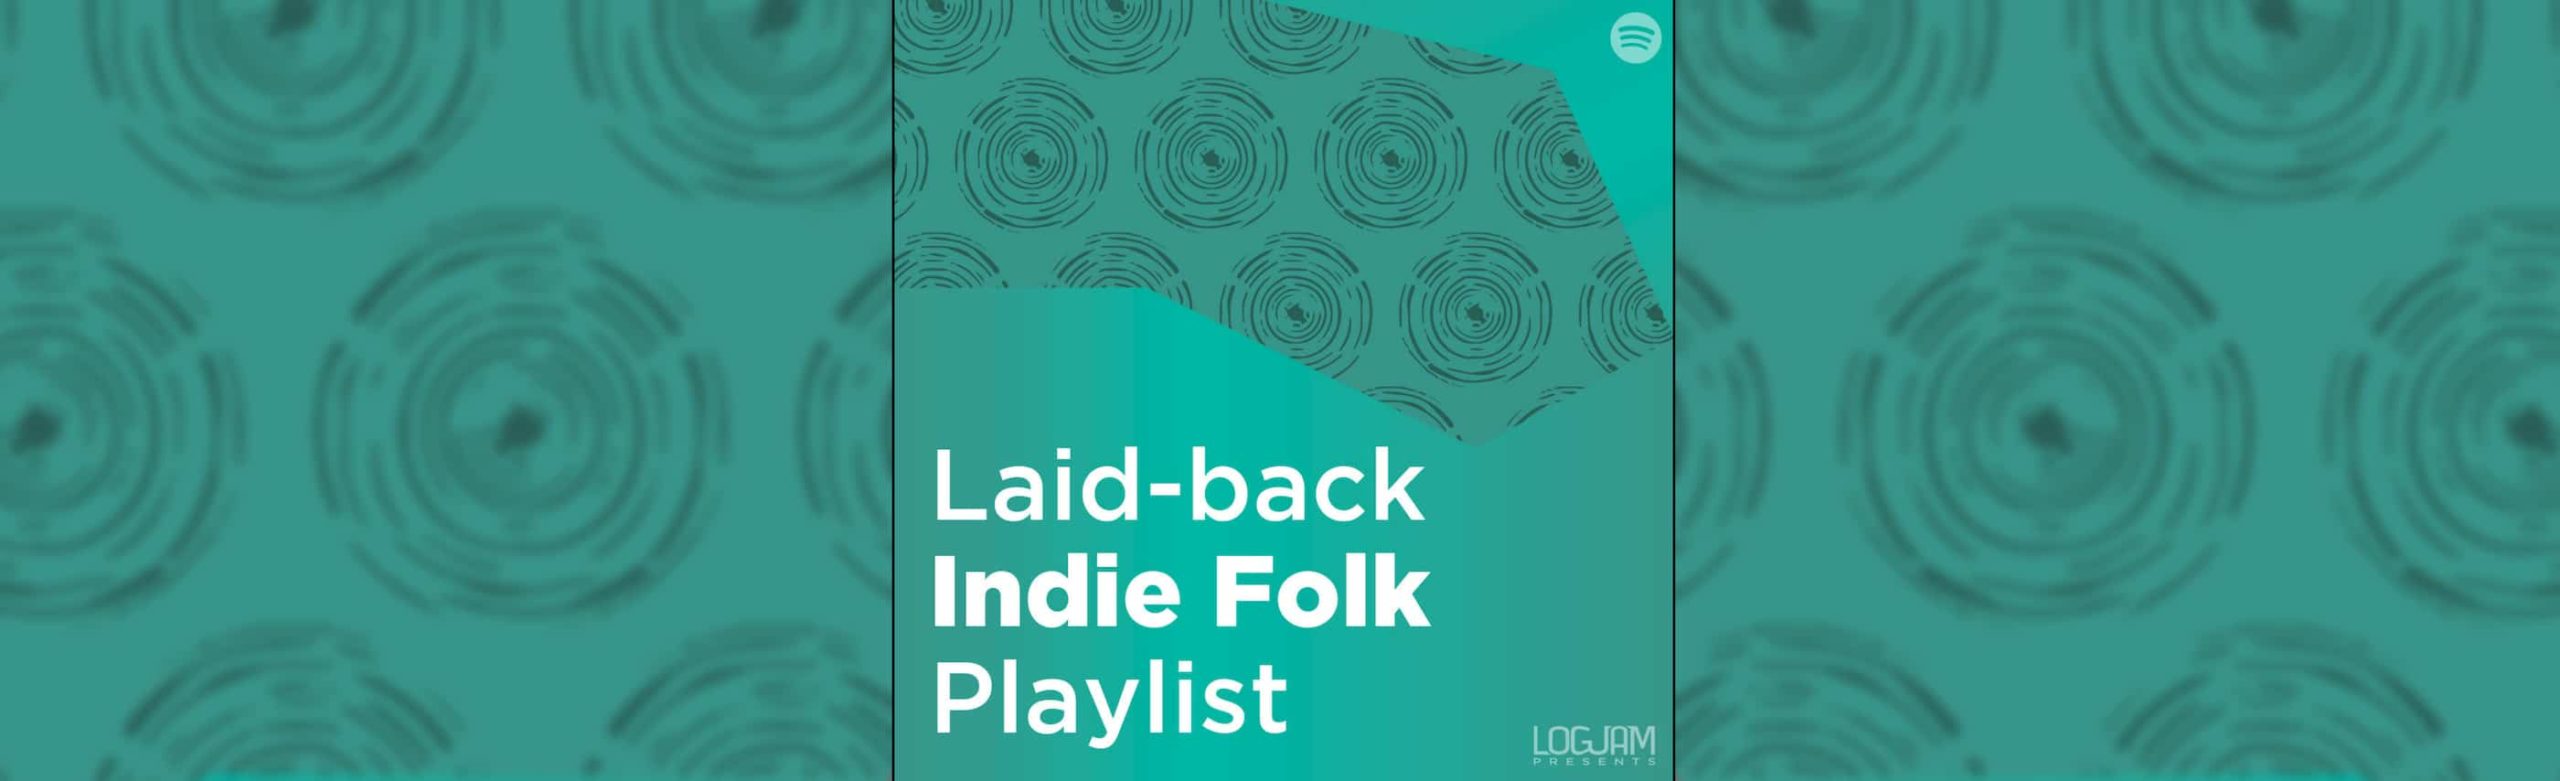 Logjam Radio: Laid-back Indie/Folk Playlist Image